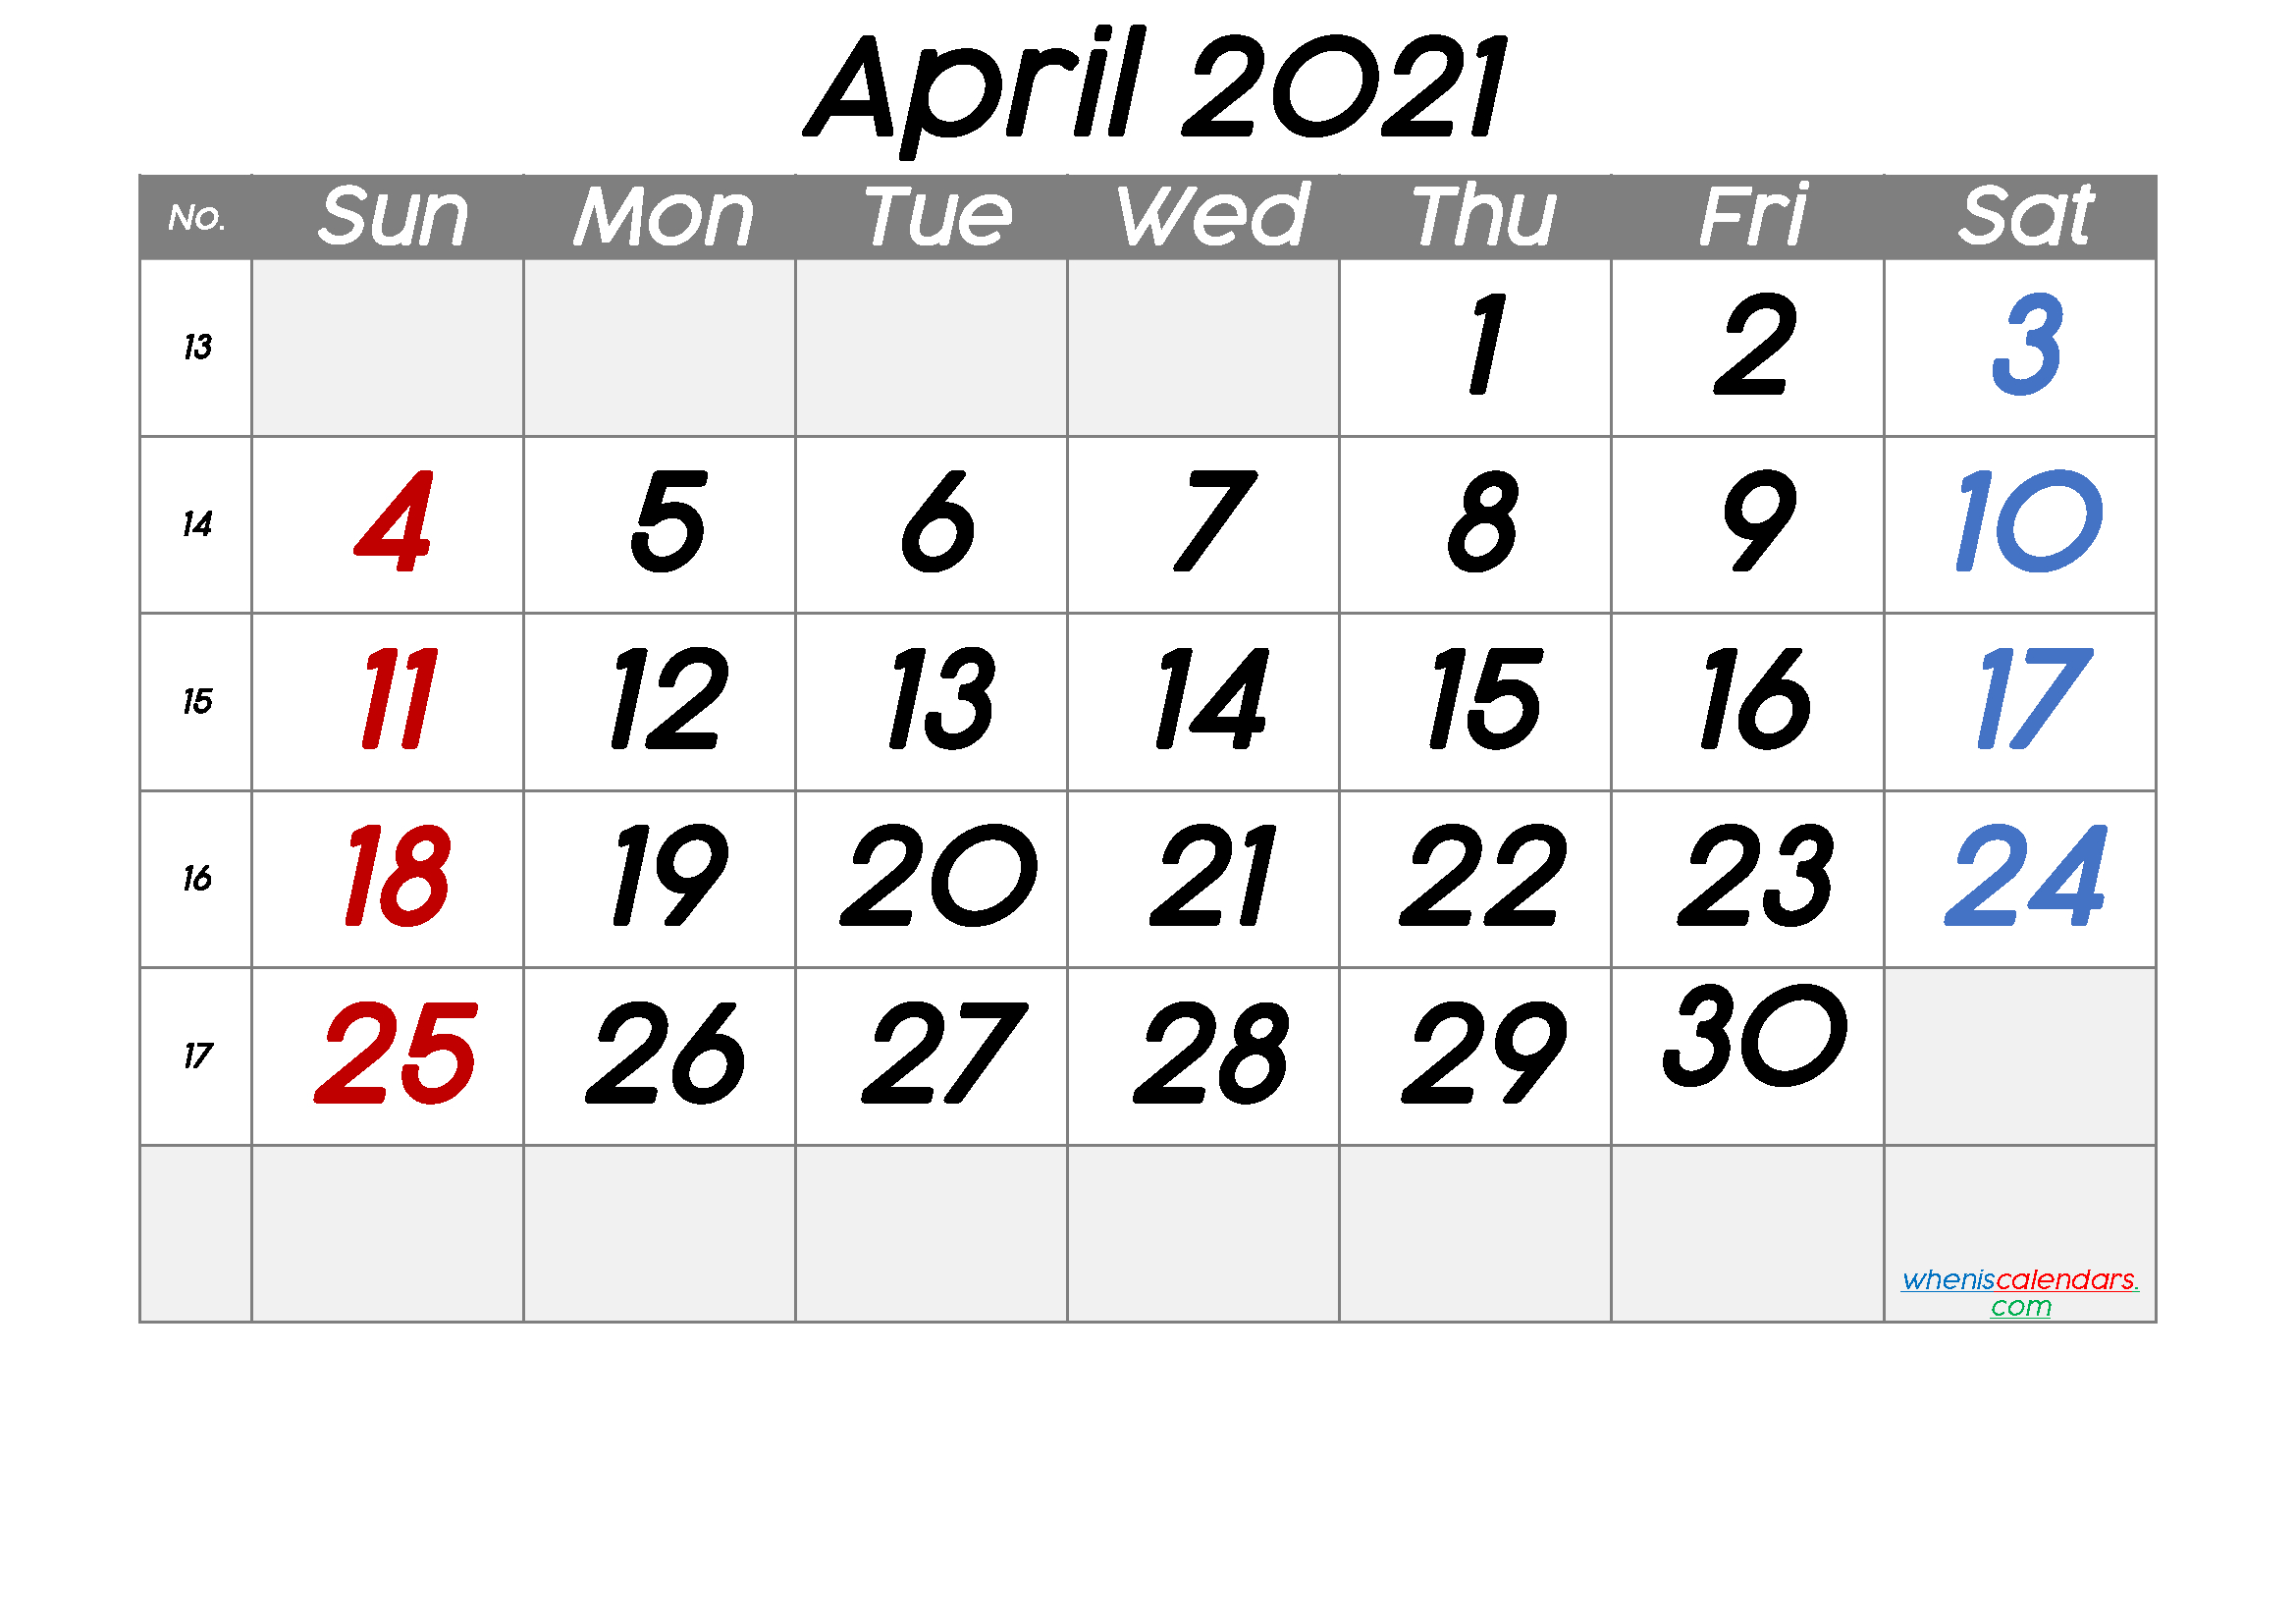 Get April 6 2022 Calendar